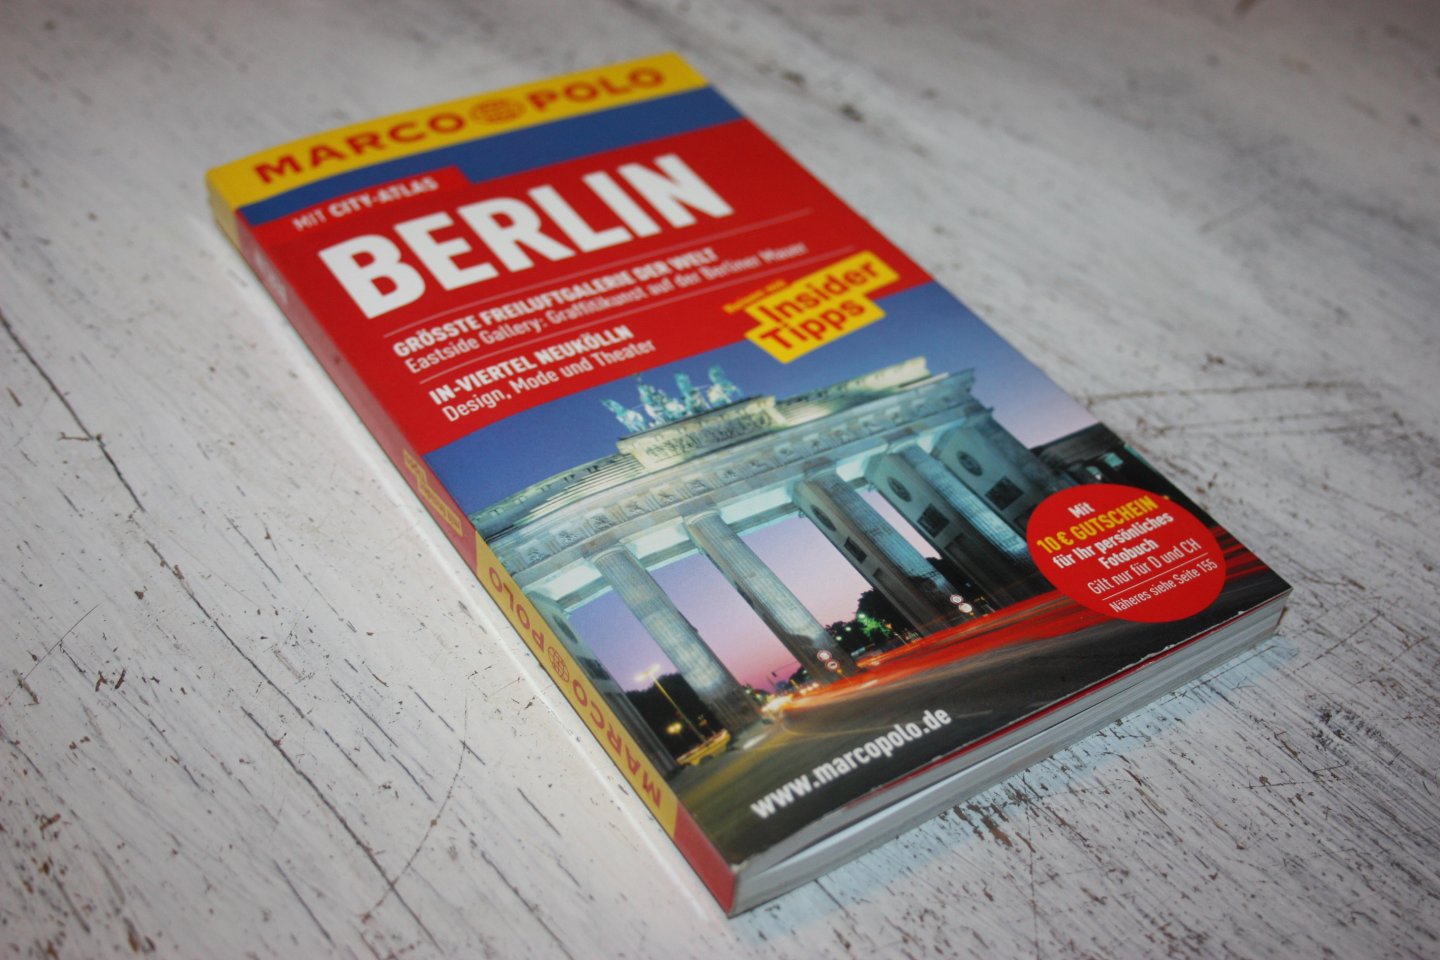 Berger, Christine - Berlin / Reisen mit Insider-Tipps. Mit Cityatlas